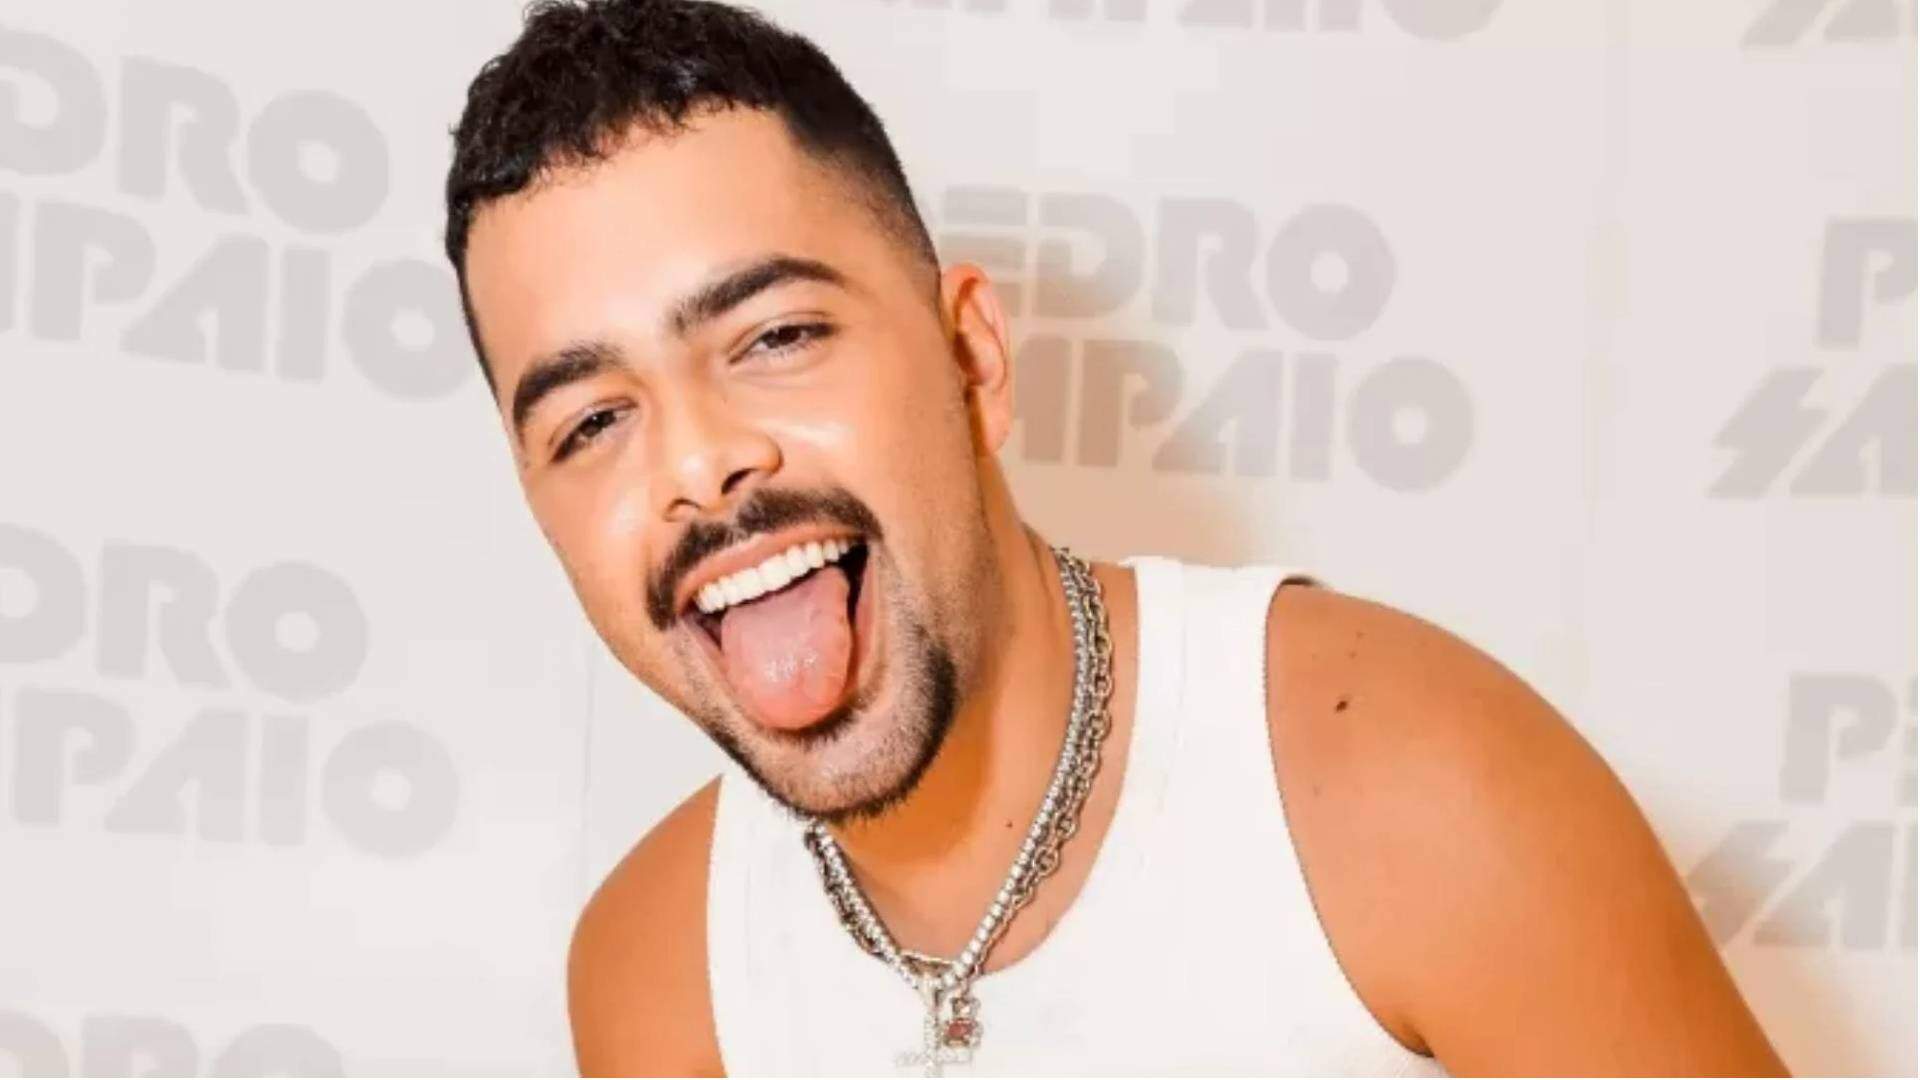 Pedro Sampaio anima fãs com spoiler sobre seu show no Lollapalooza: “Podem esperar muitas surpresas” - Metropolitana FM